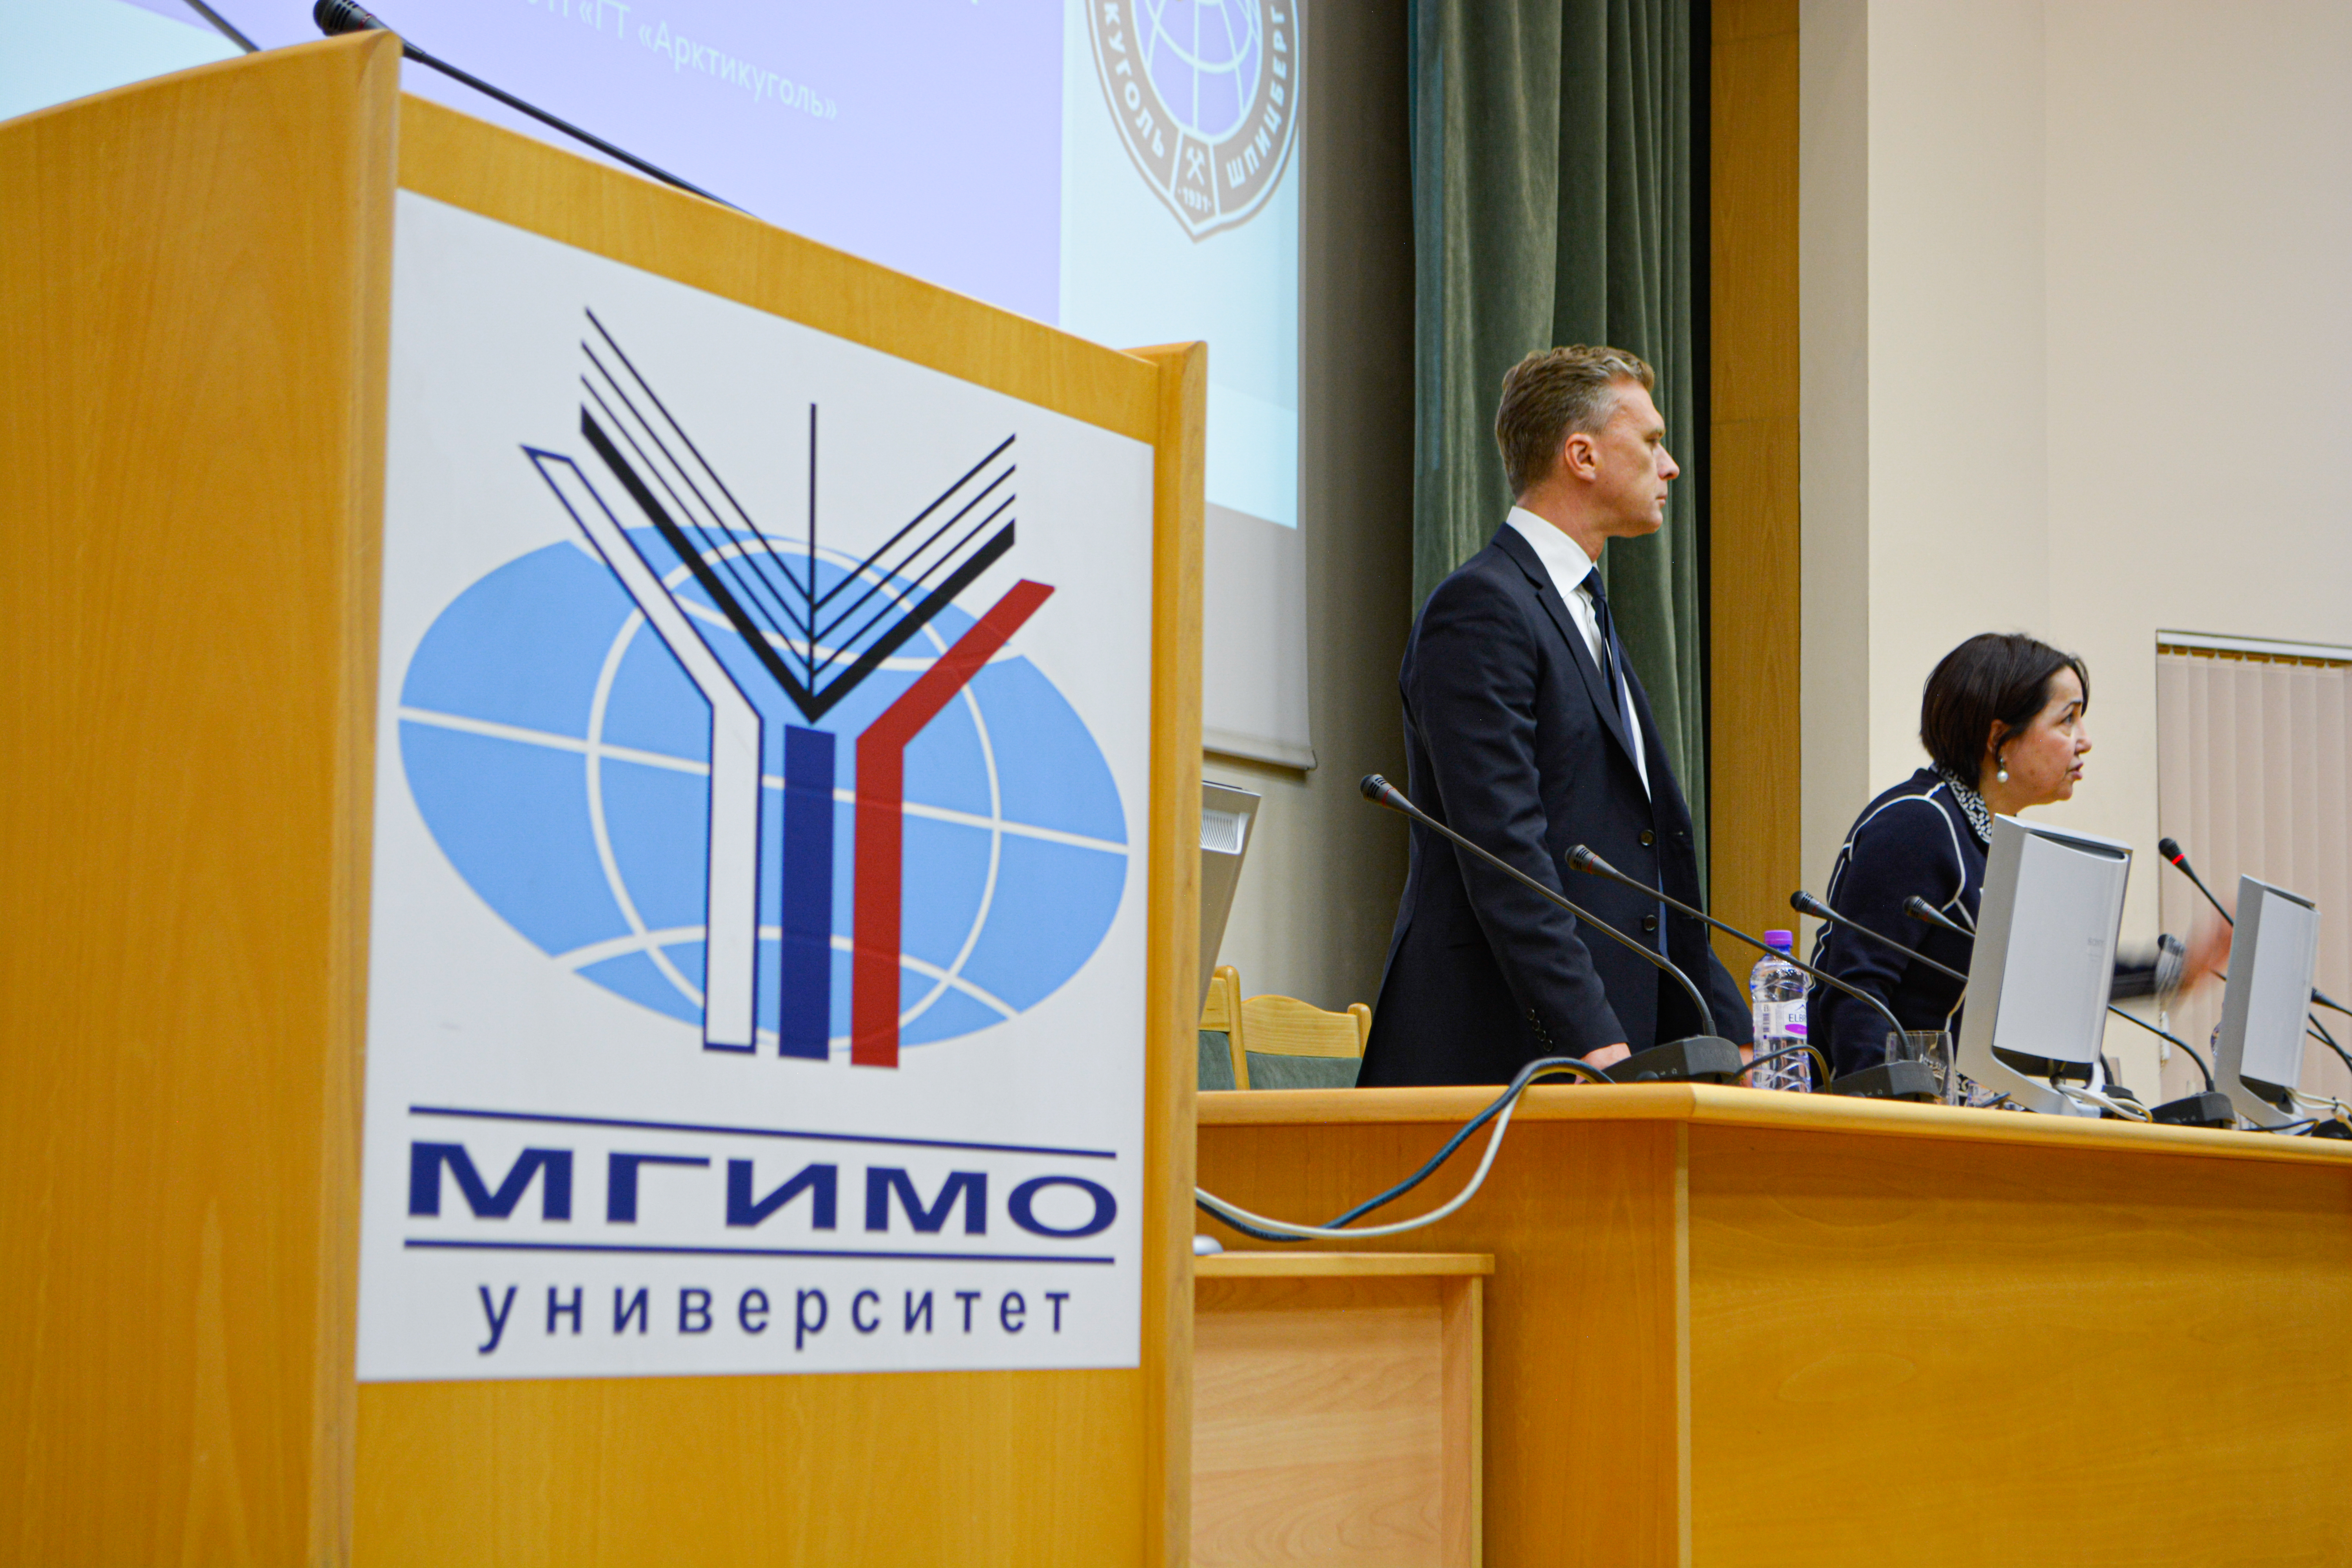 Ильдар Неверов выступил в МГИМО с лекцией о Шпицбергене